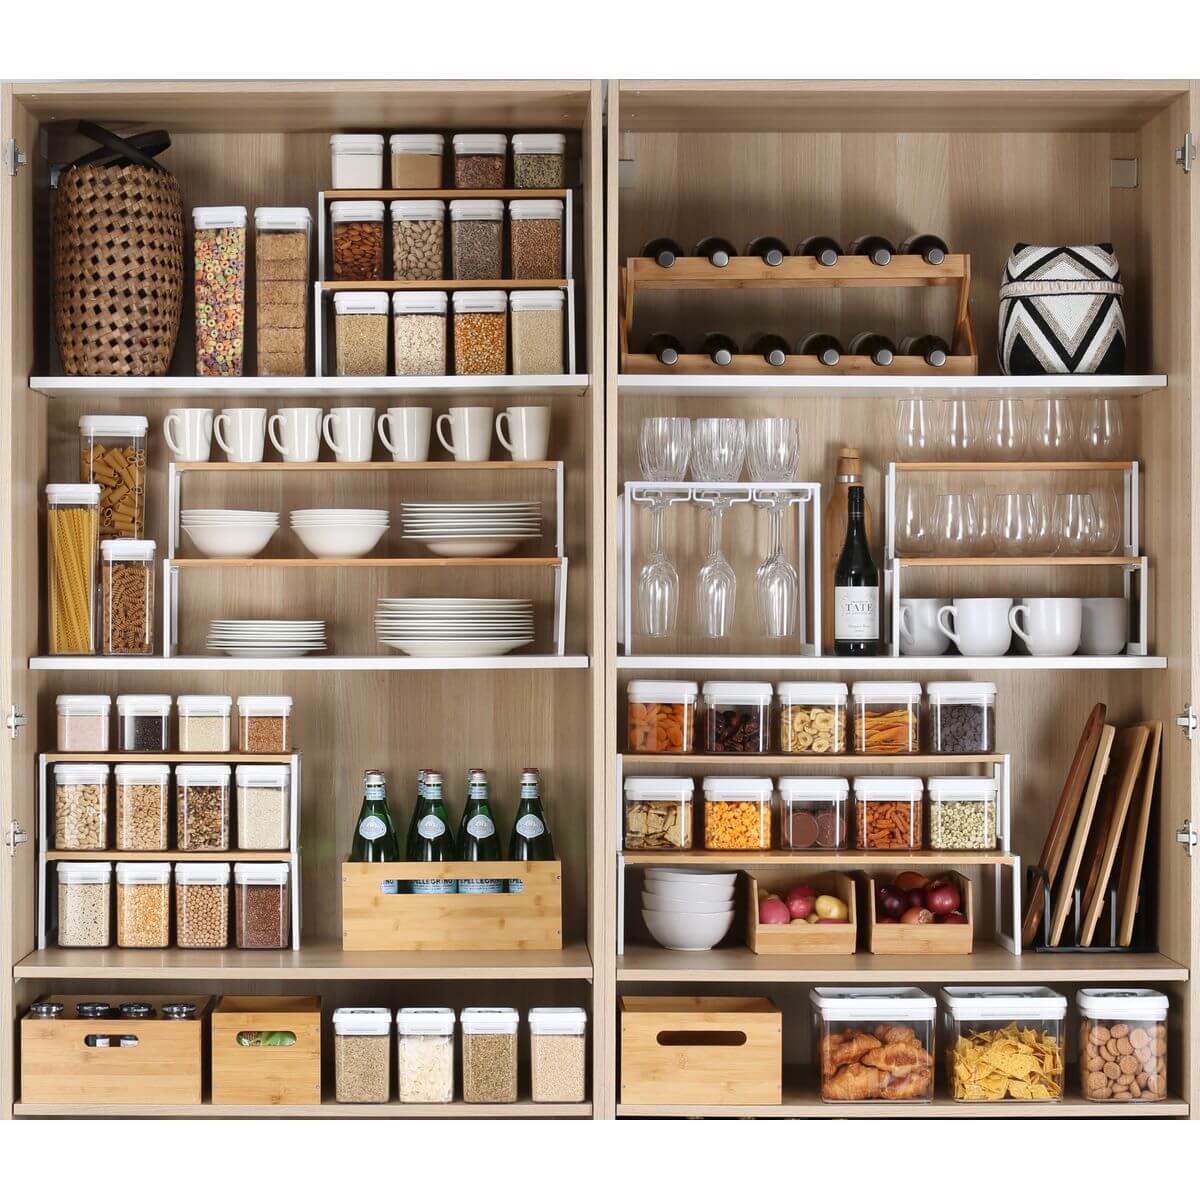 Pantry Shelves & Kitchen Bins